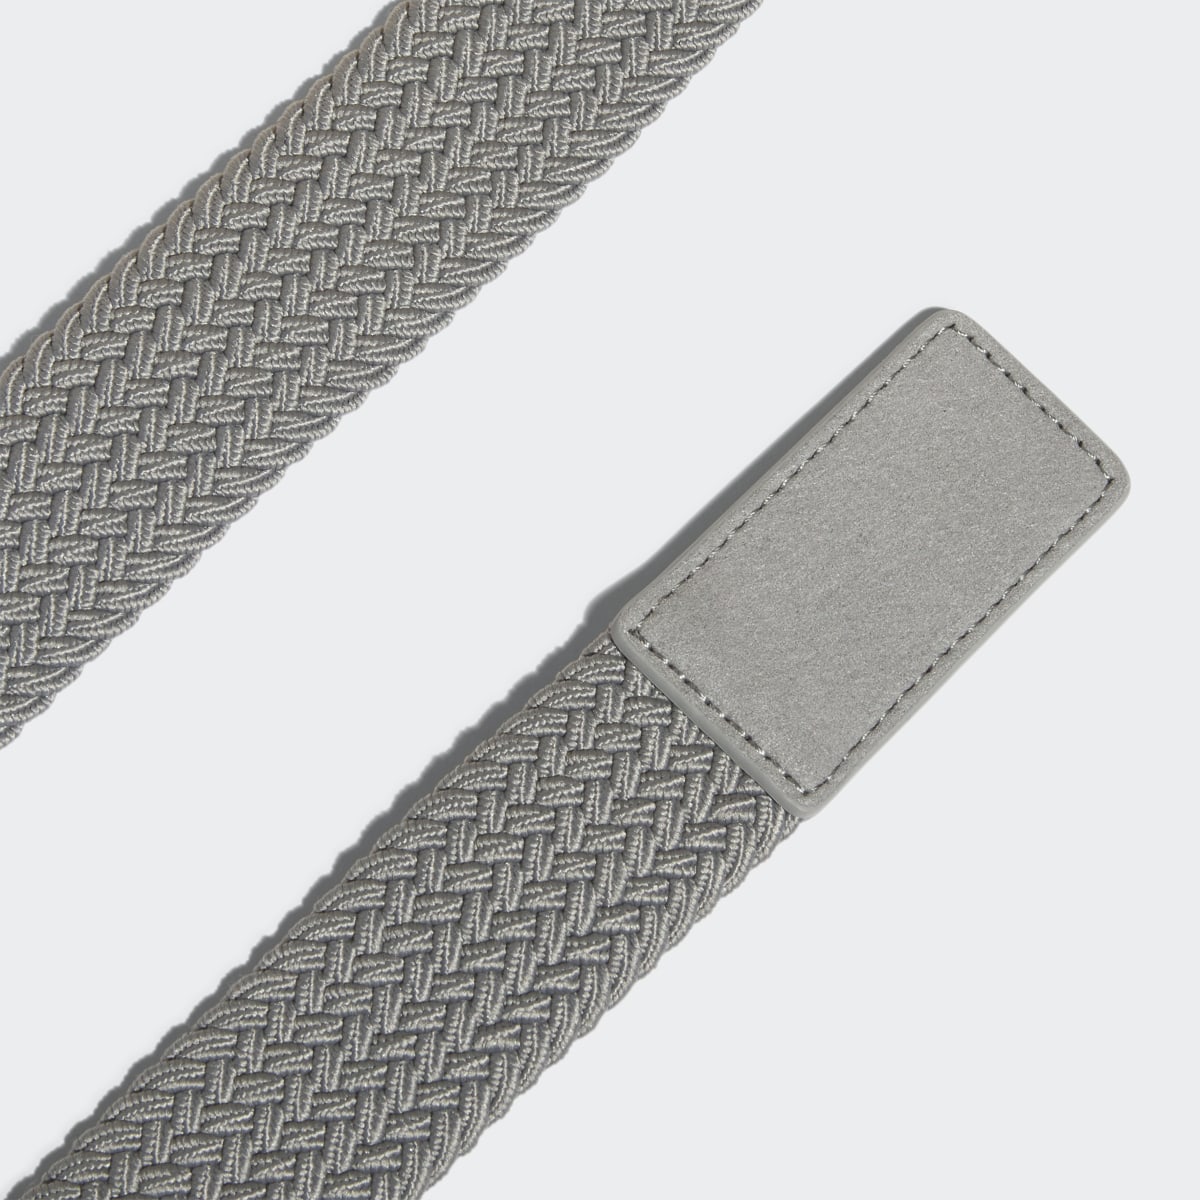 Adidas Braided Stretch Belt. 4